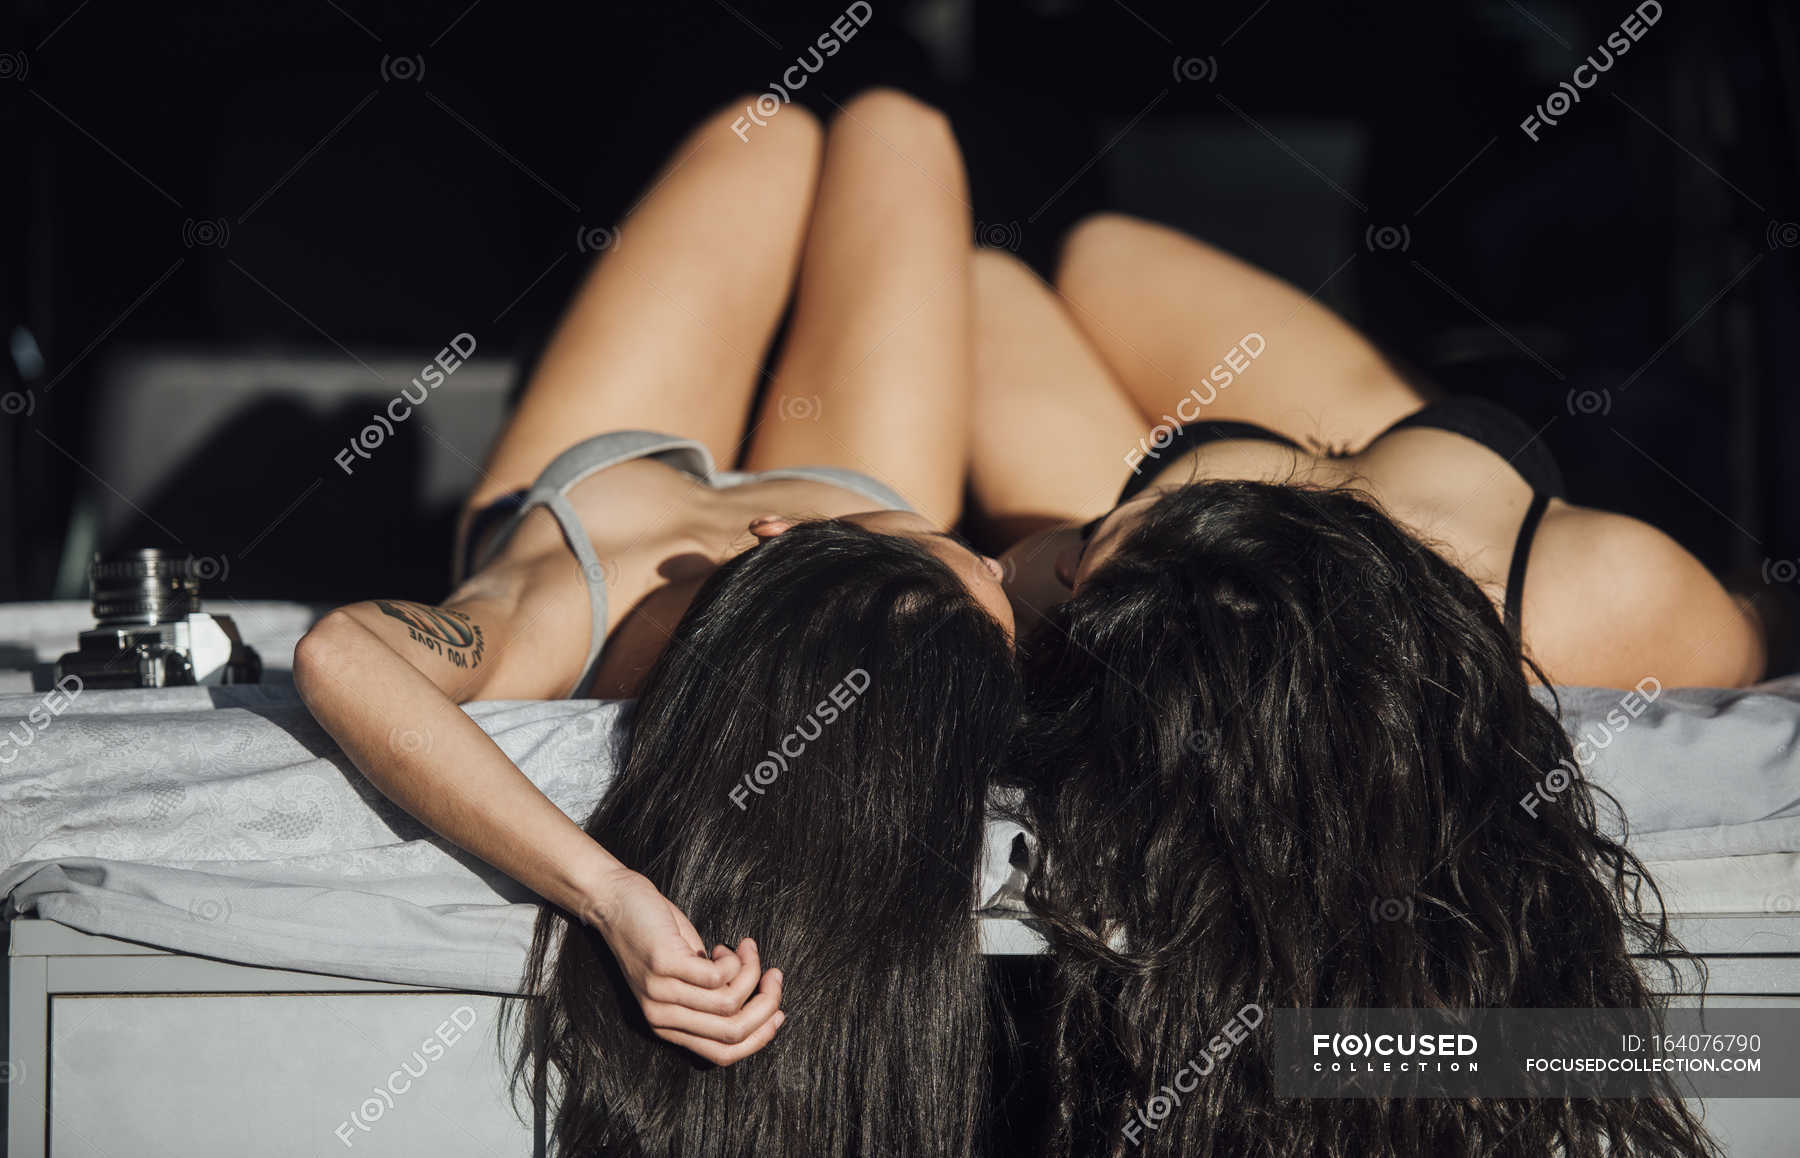 Lesbian Lingerie Photos